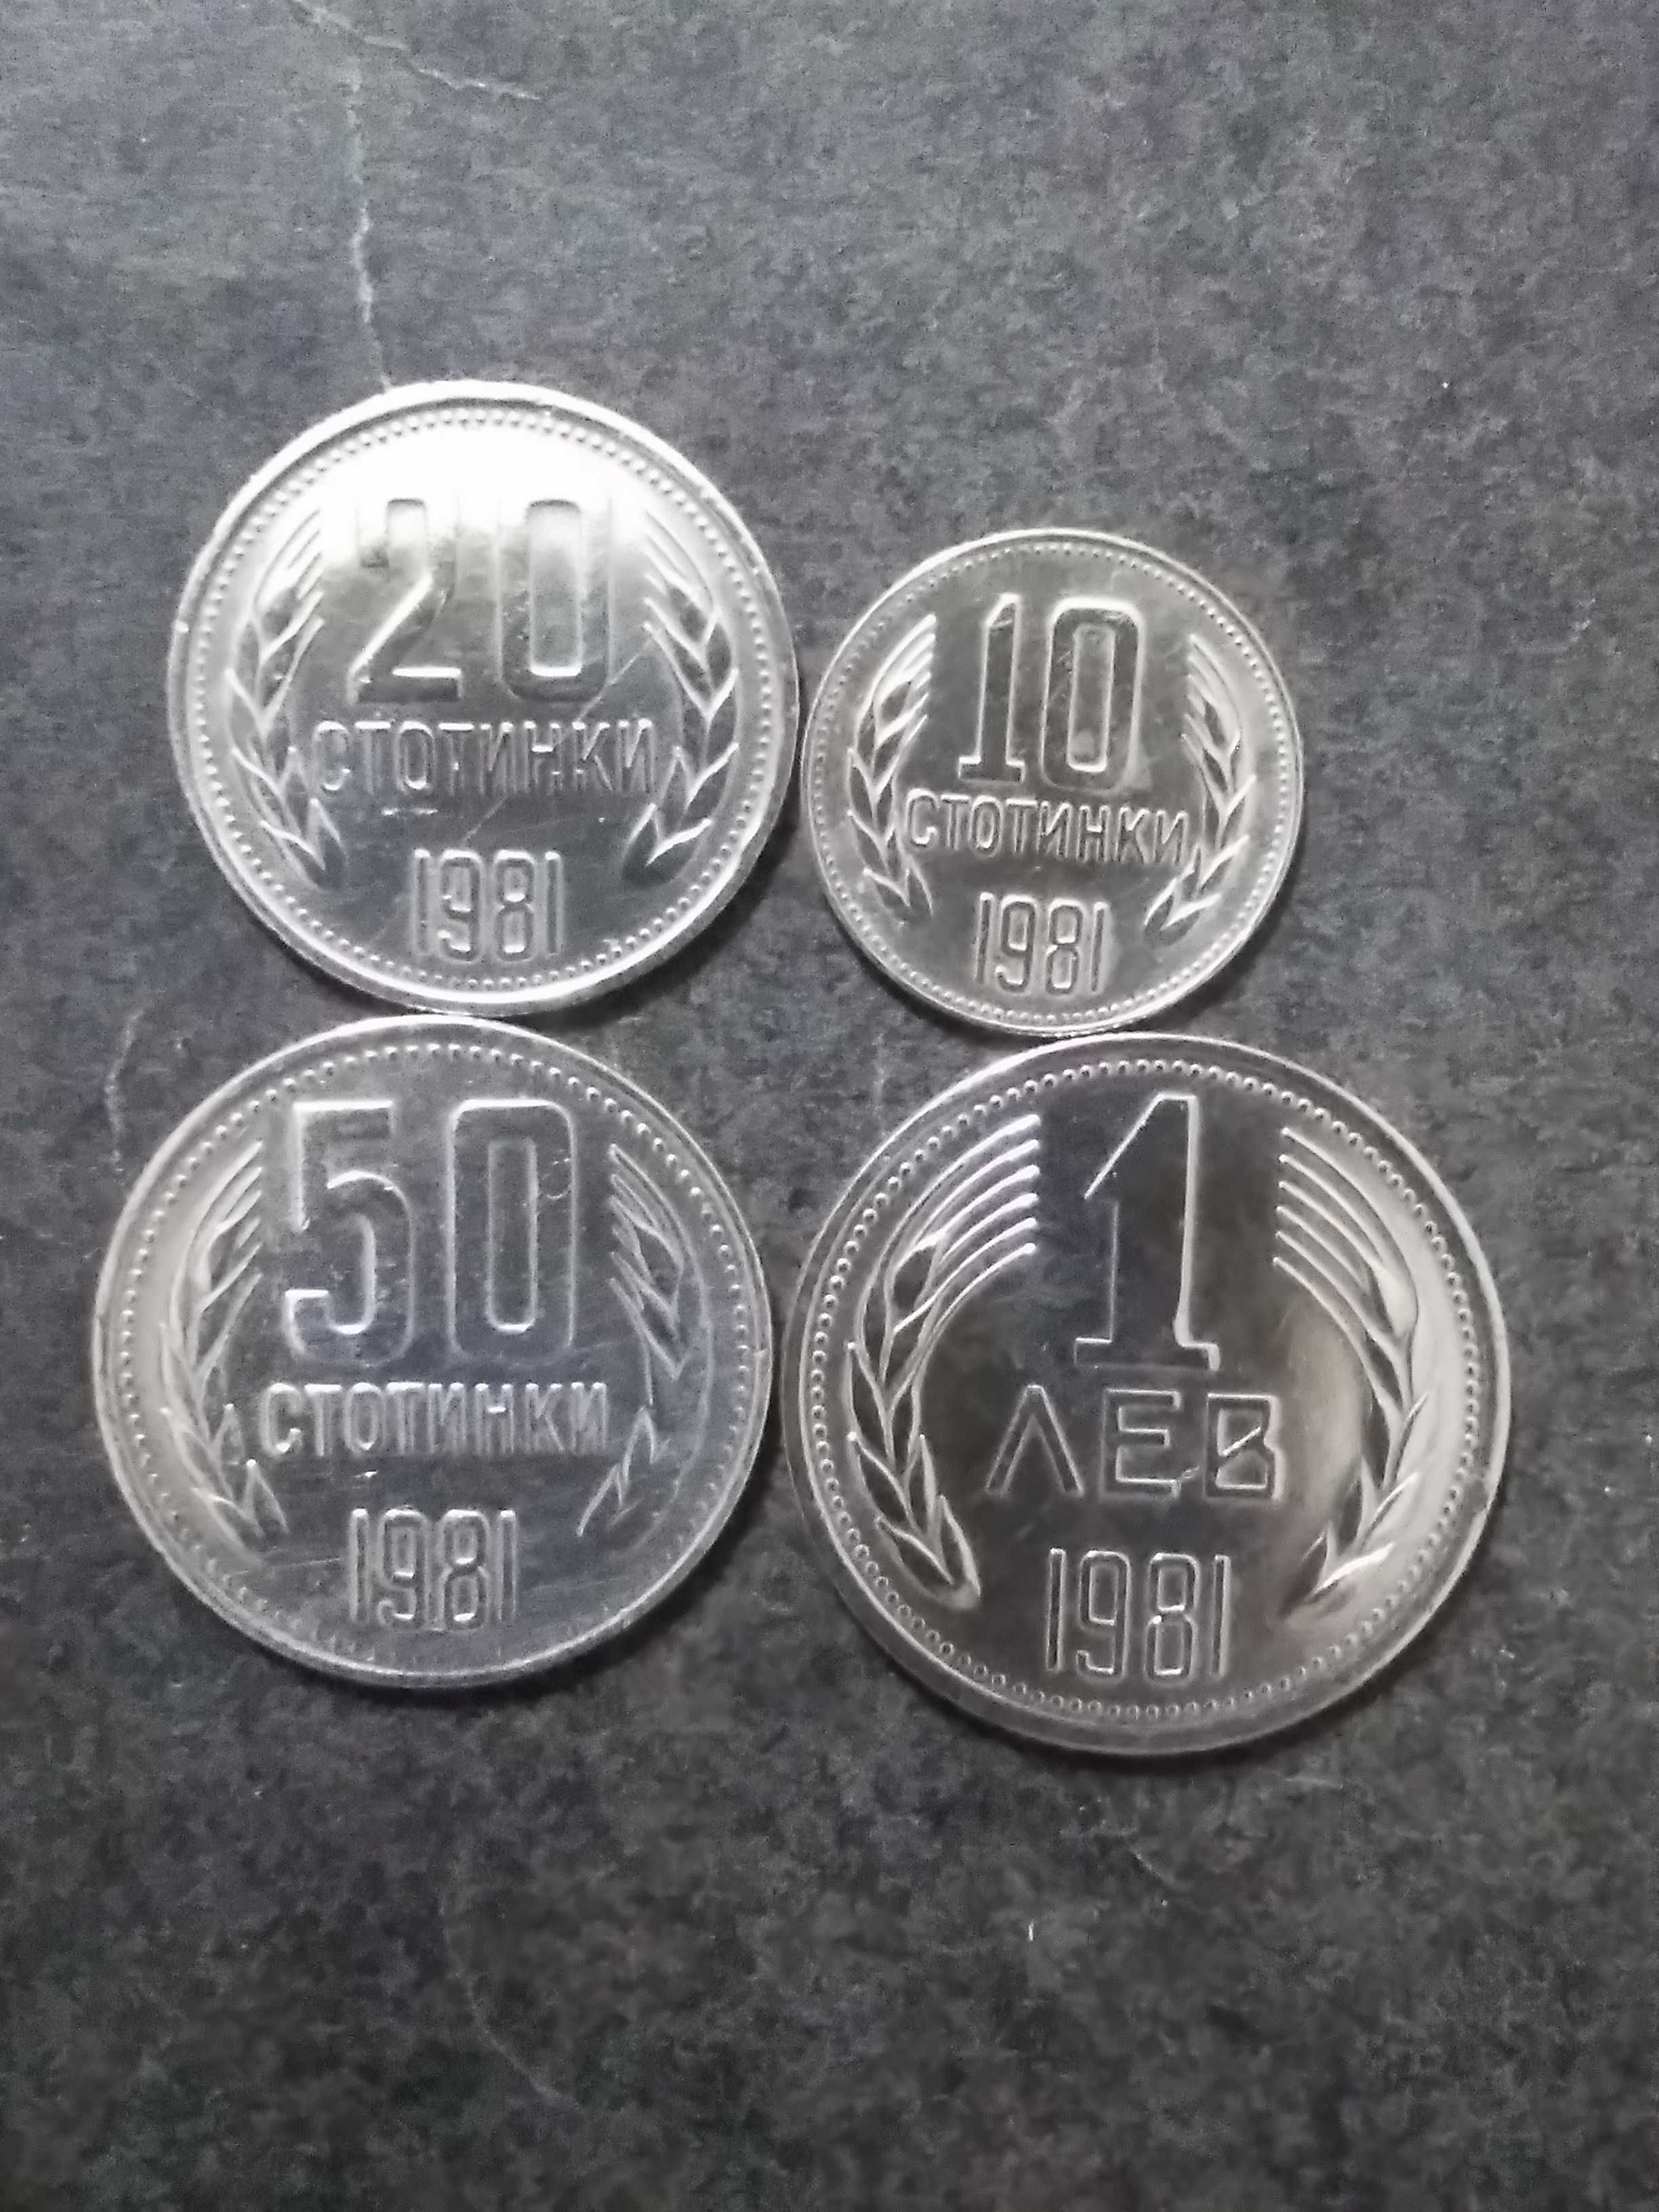 Български монети от 1981г.